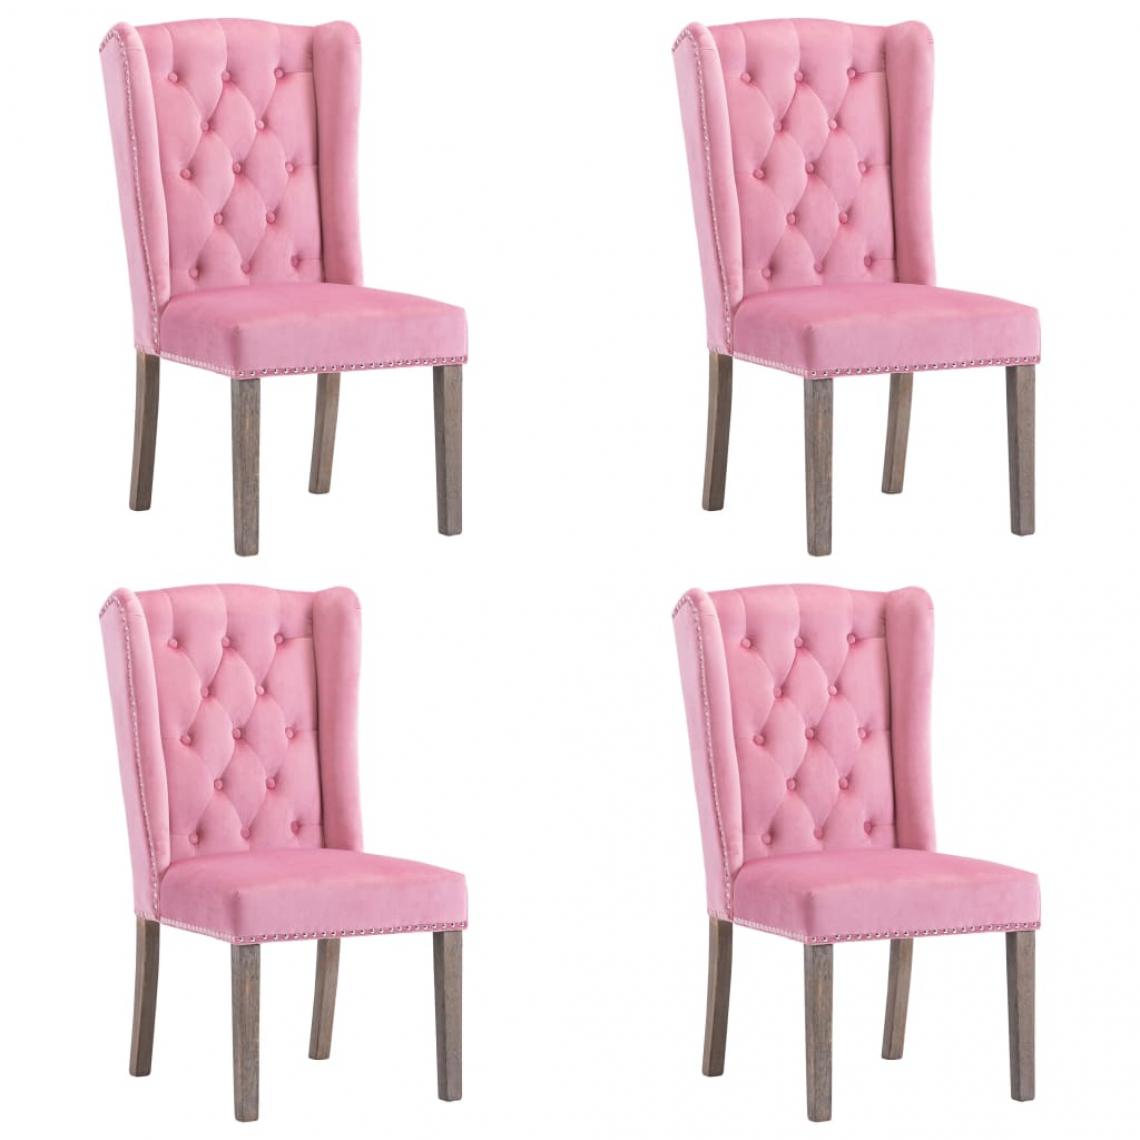 Decoshop26 - Lot de 4 chaises de salle à manger cuisine design classique velours rose CDS021920 - Chaises